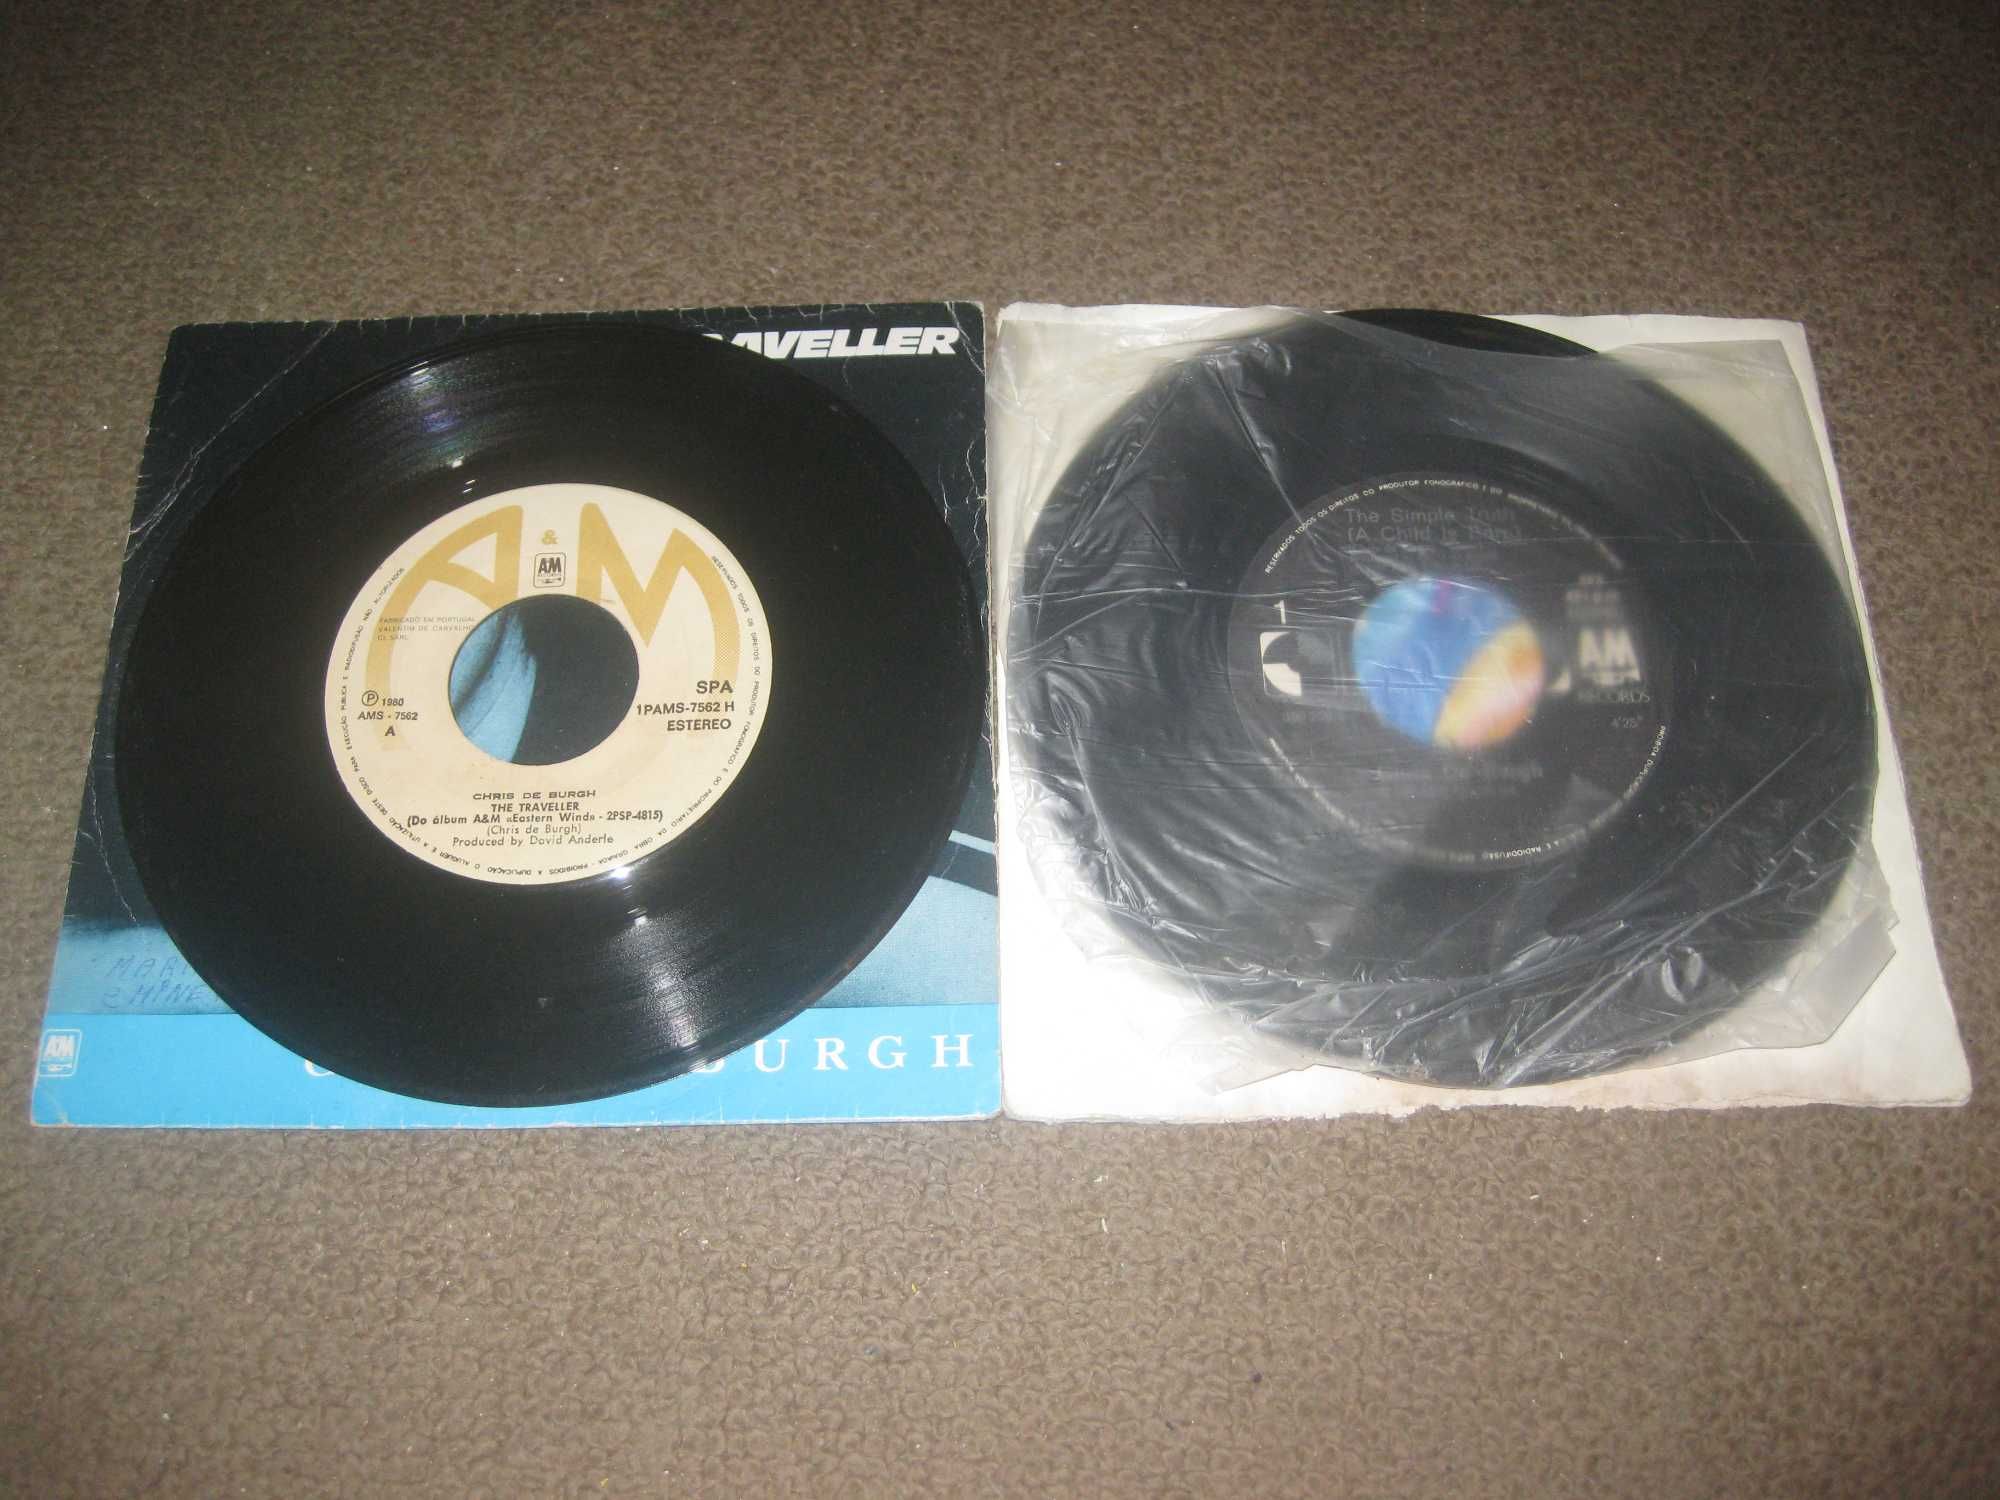 2 Discos em Vinil Single 45 rpm do Chris de Burgh